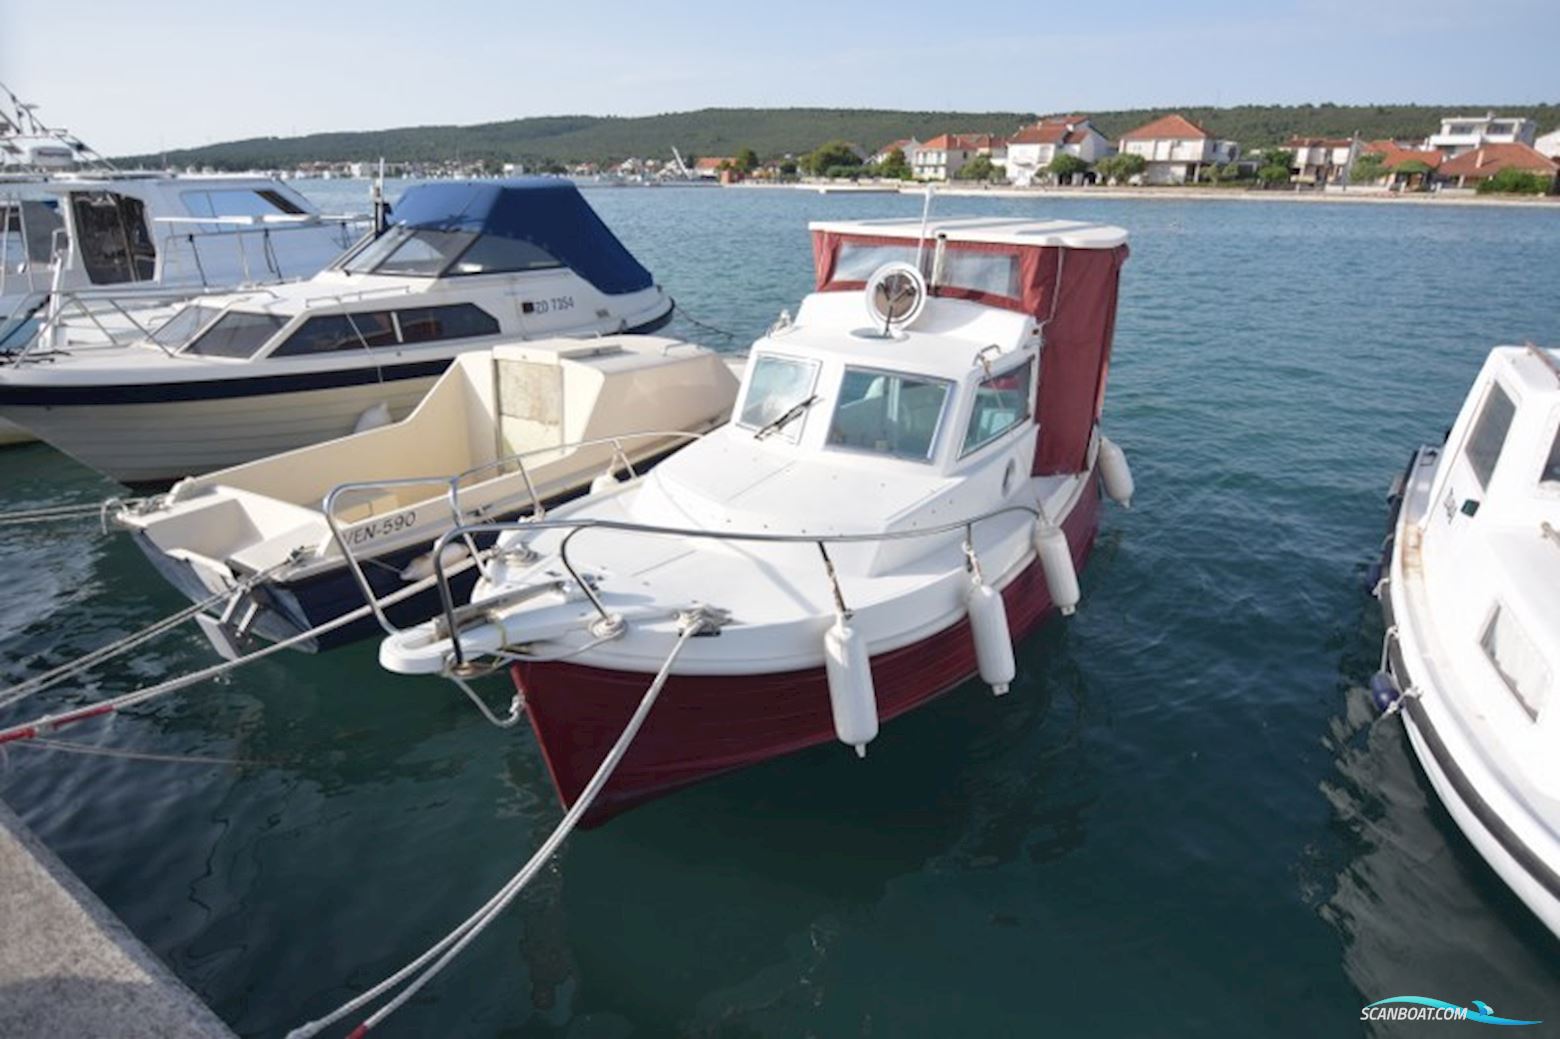 Bluestar Murter 600 Motorboot 2010, Kroatien